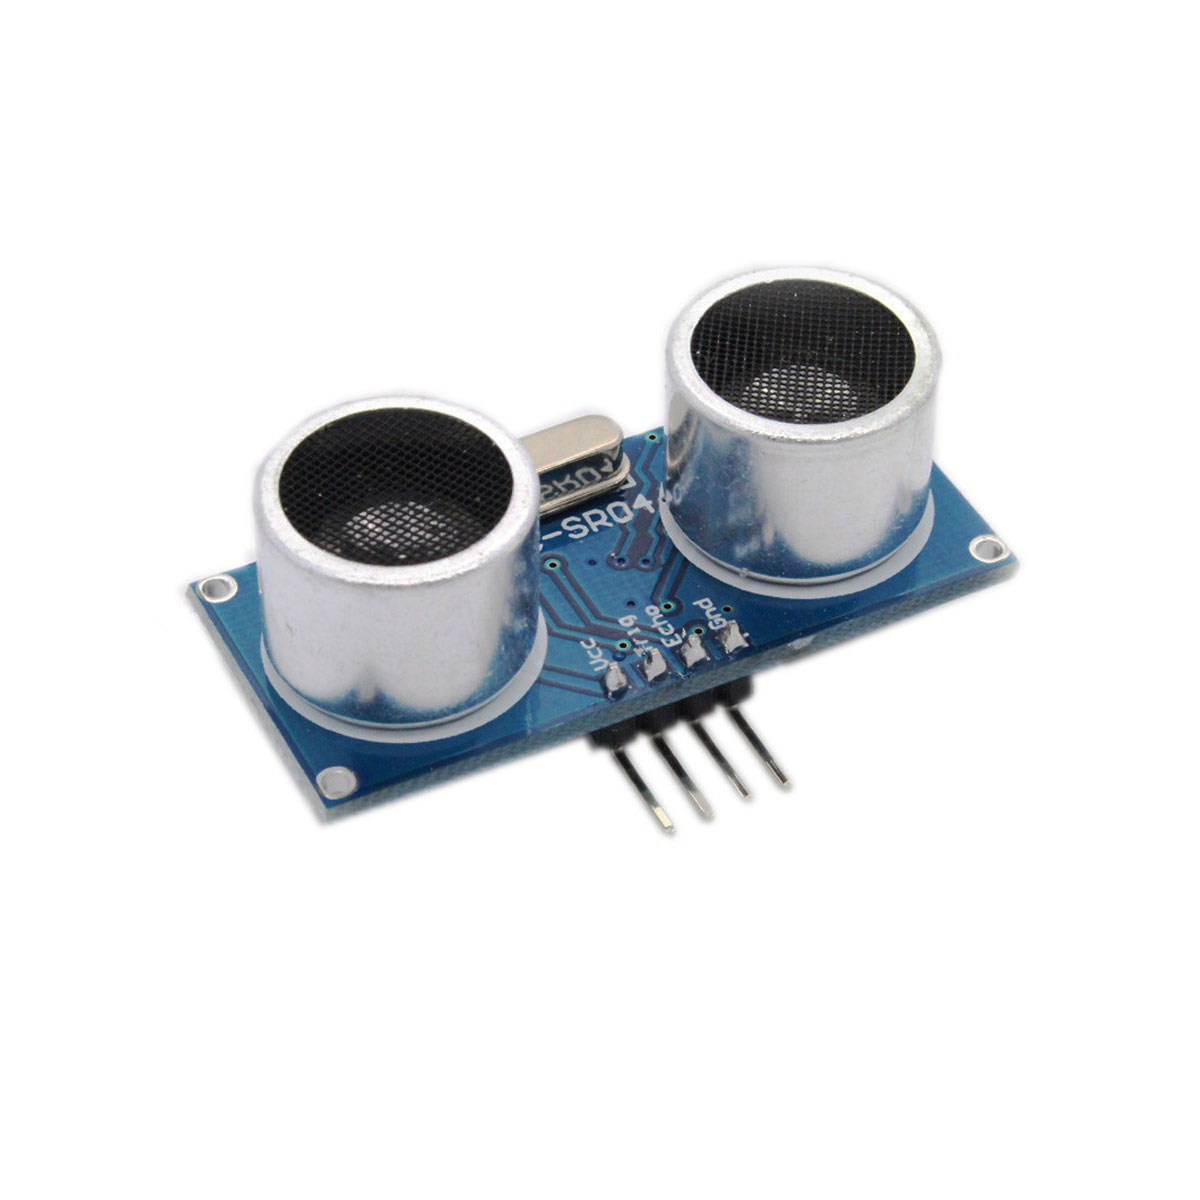 sensor diy kit arduino ultraschall modul entfernungen von wandler 